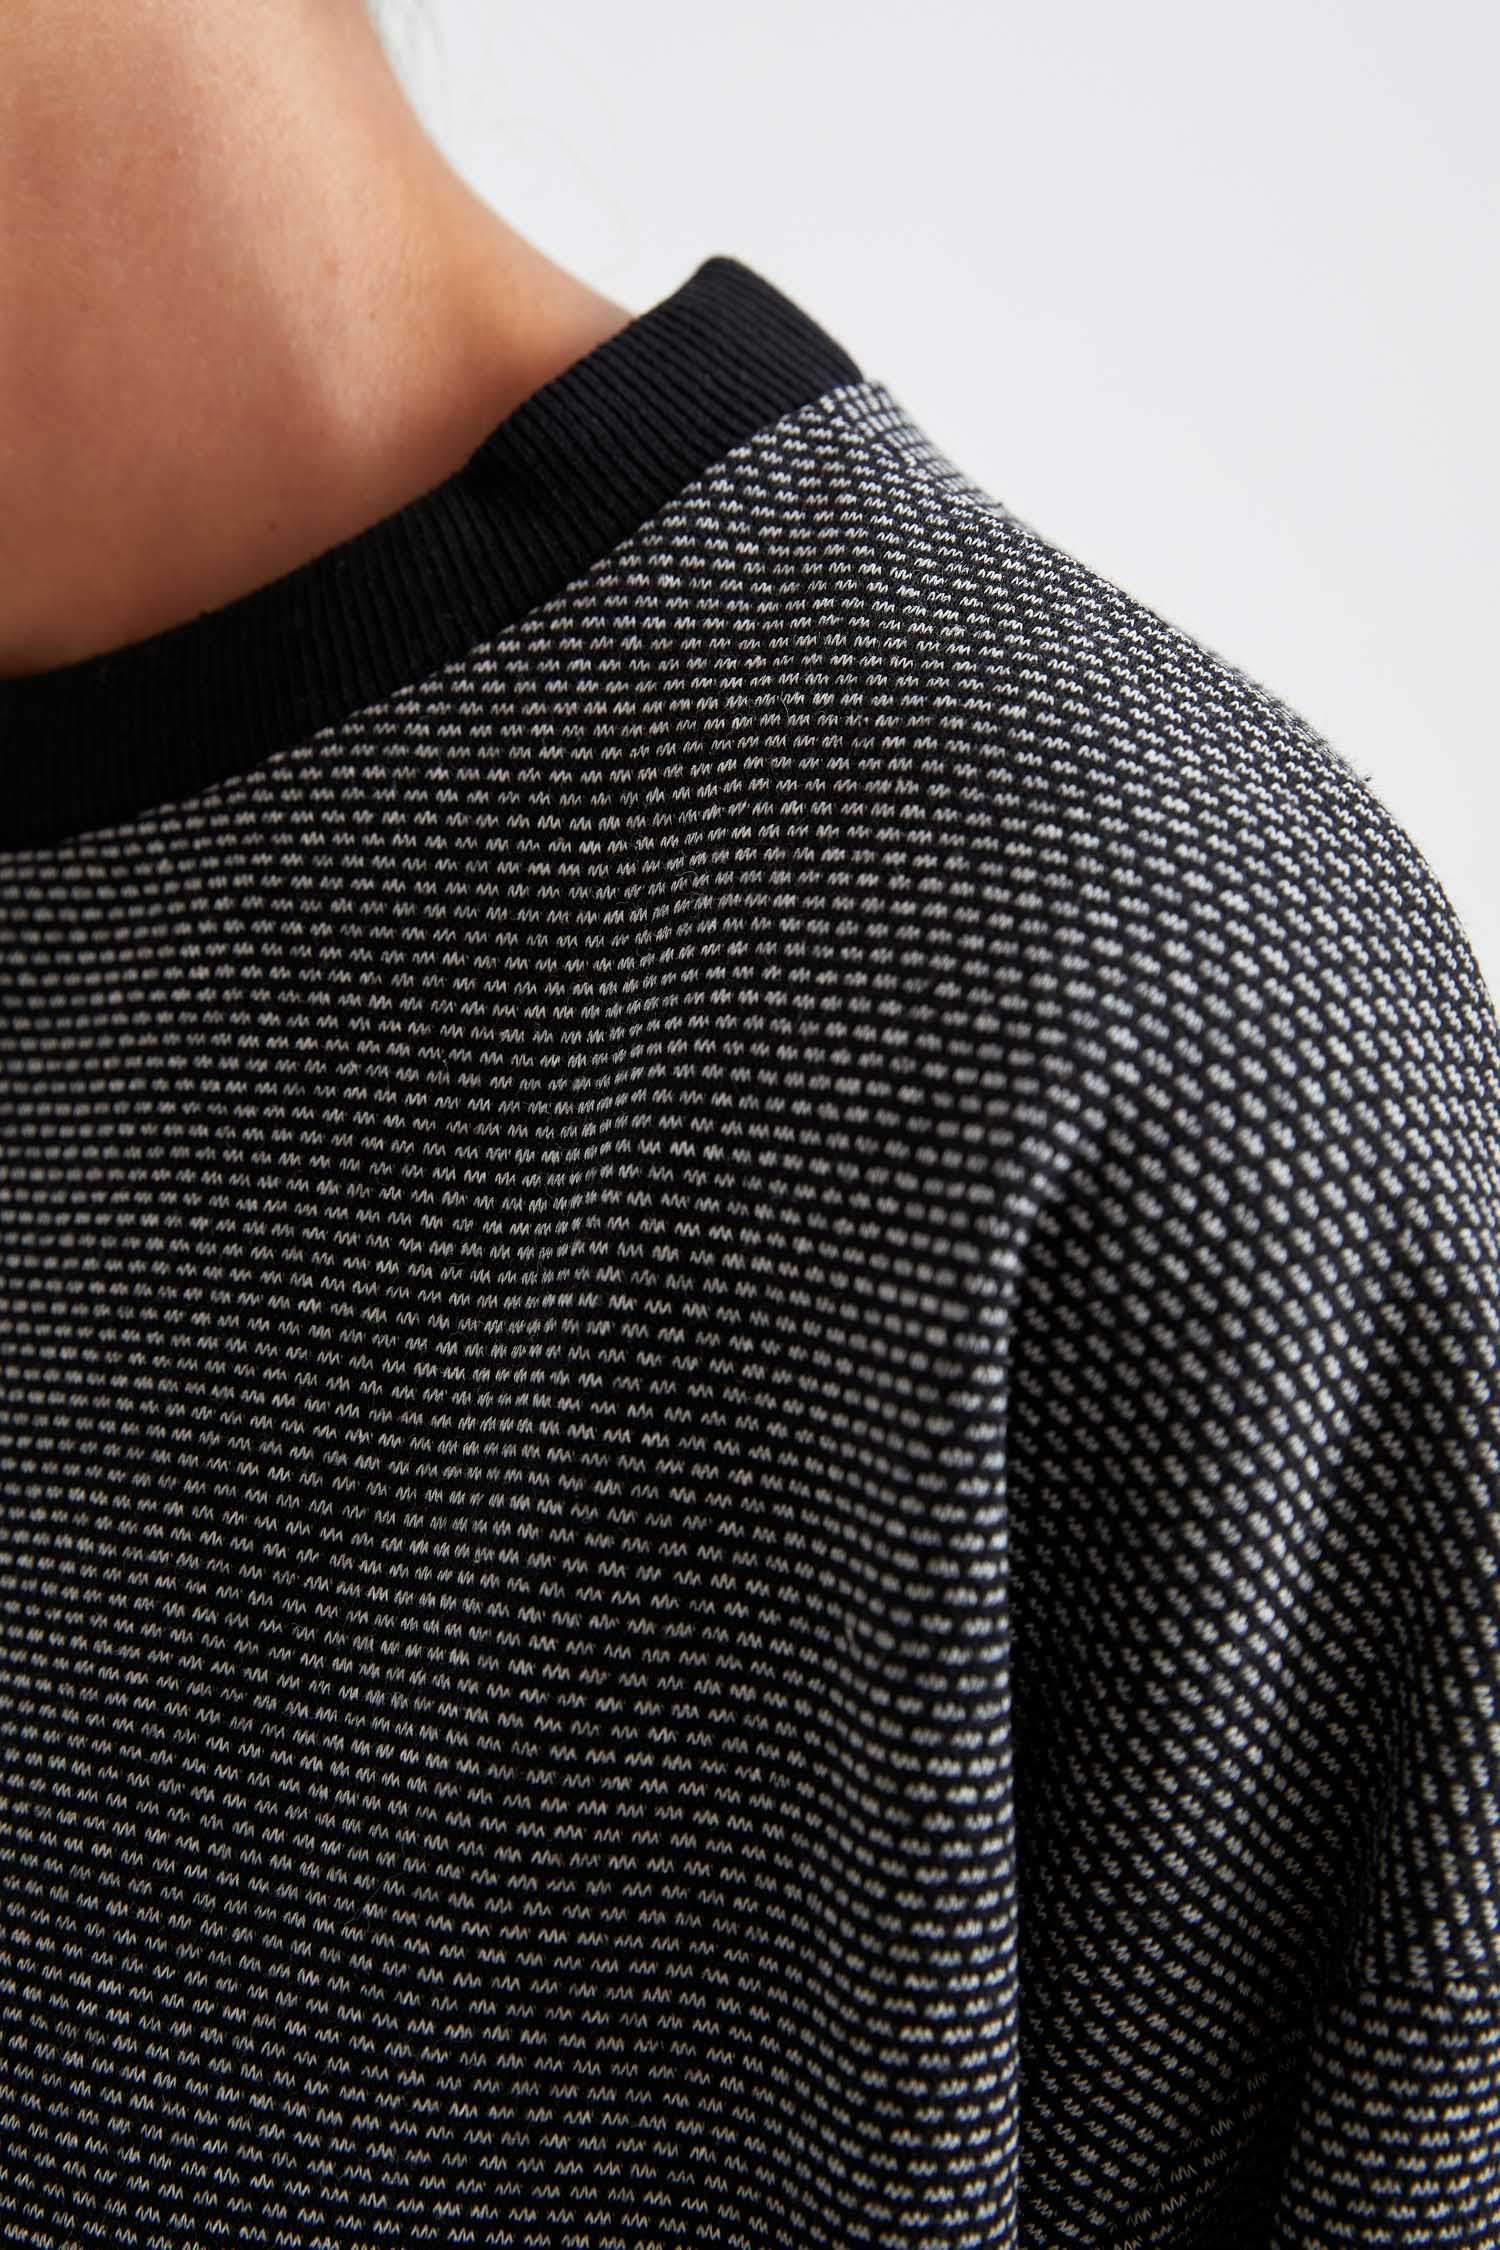 Defacto Regular Fit Sweatshirt. 5